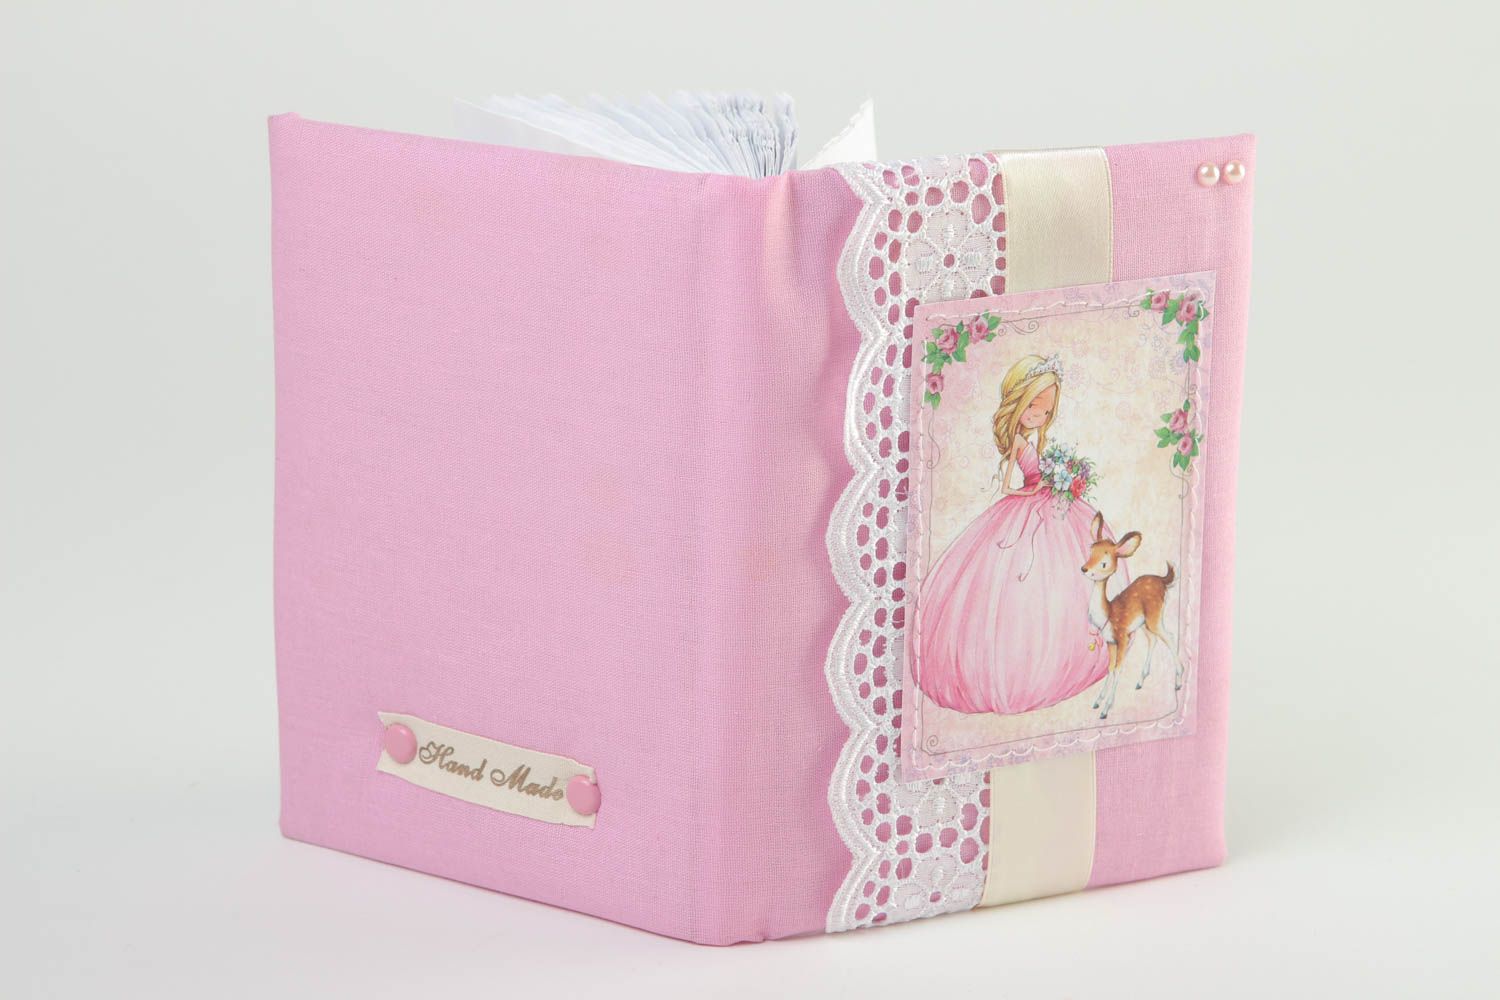 Handmade Notiz Buch Geschenk für Frauen Mode Accessoire mit Stoff Hülle rosa foto 4